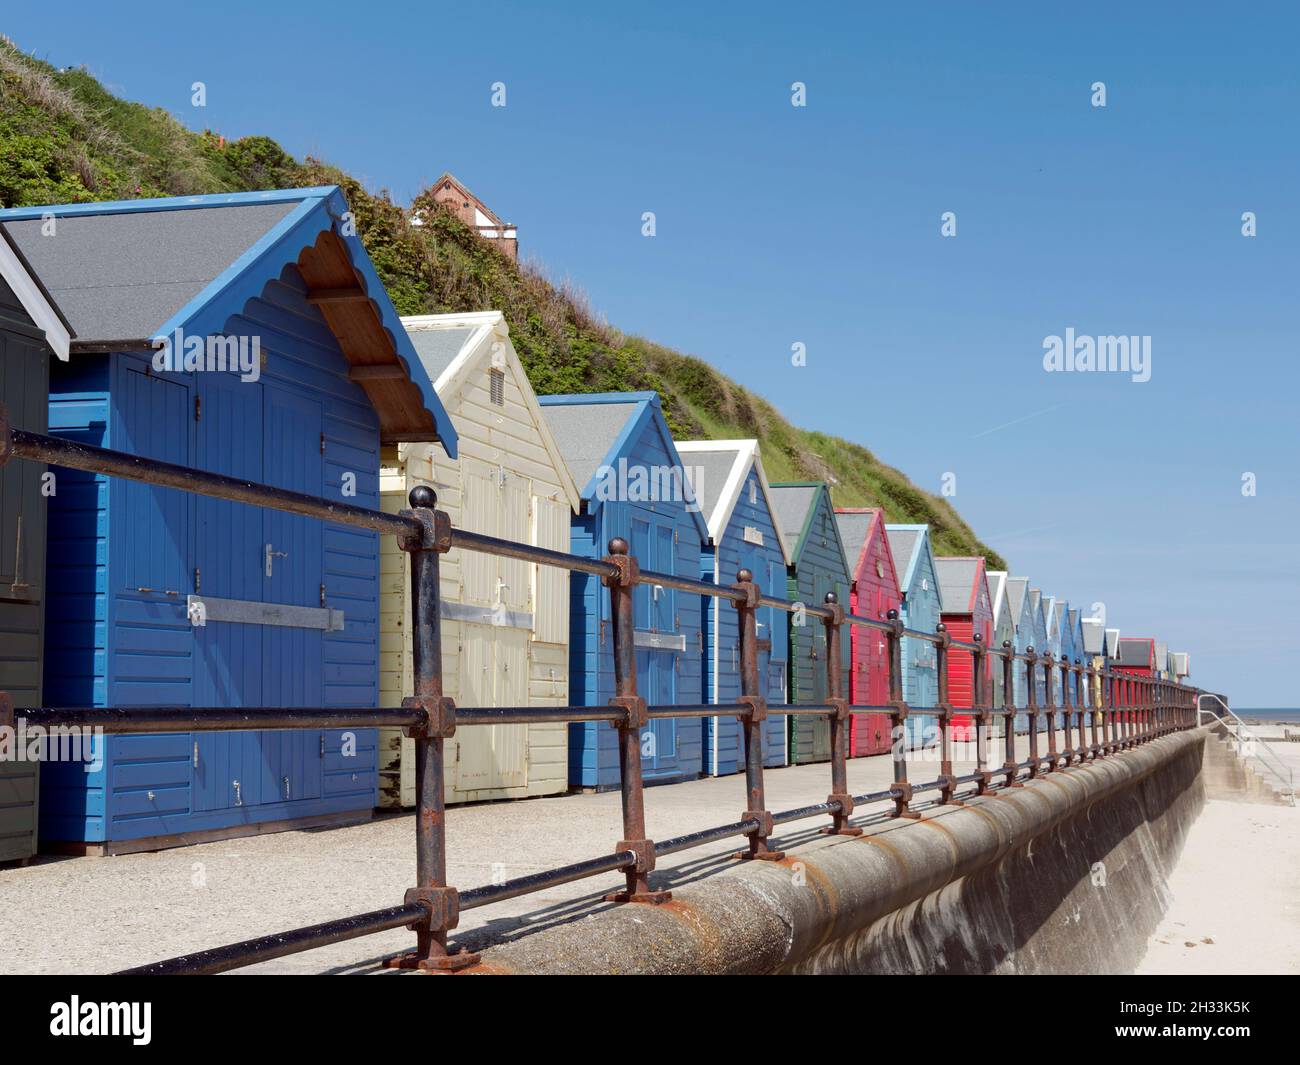 Strandhütten säumen die Promenade unterhalb der Klippen in der kleinen Küstenstadt Mundesley, einem attraktiven Ort an der North Norfolk Küste für Touristen. Stockfoto